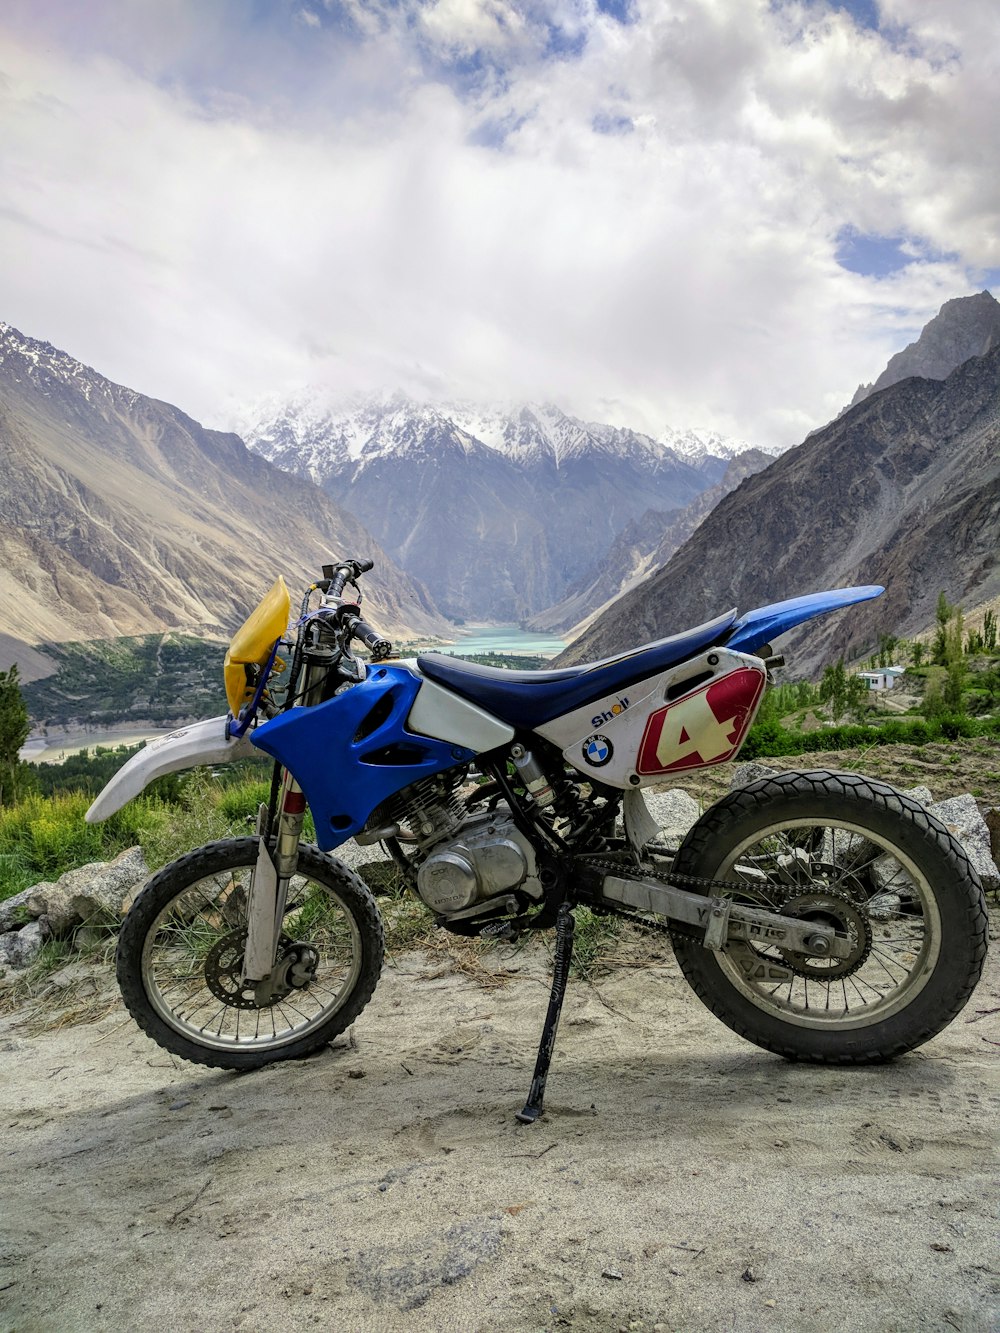 Una motocicleta estacionada en un camino rocoso